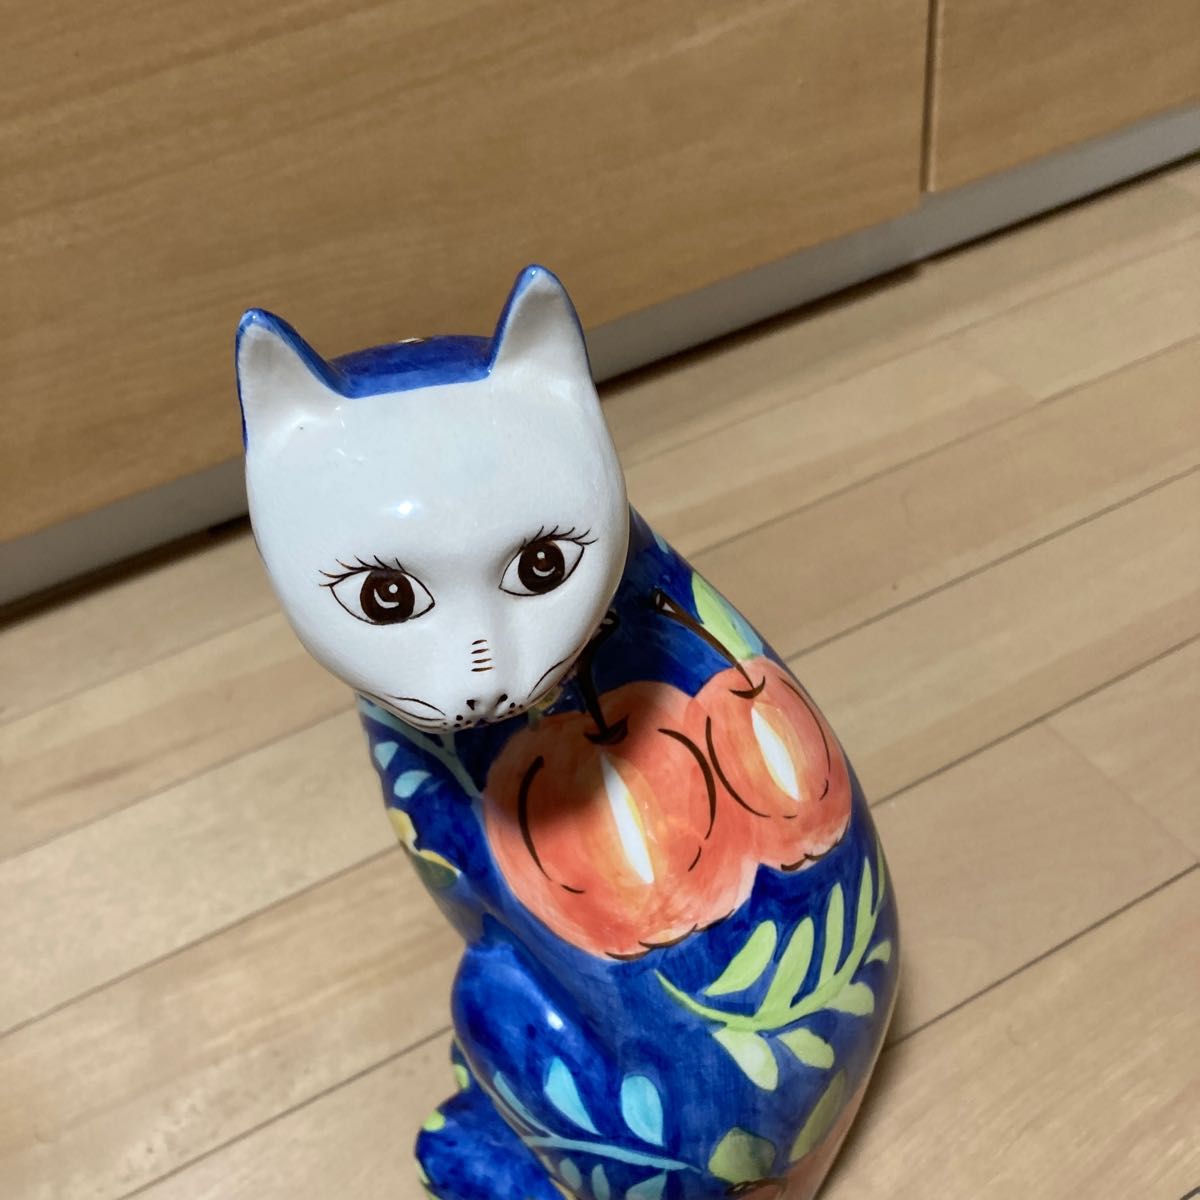 日本製 リアルな猫のぬいぐるみ 58cm (ミケネコL目明き)